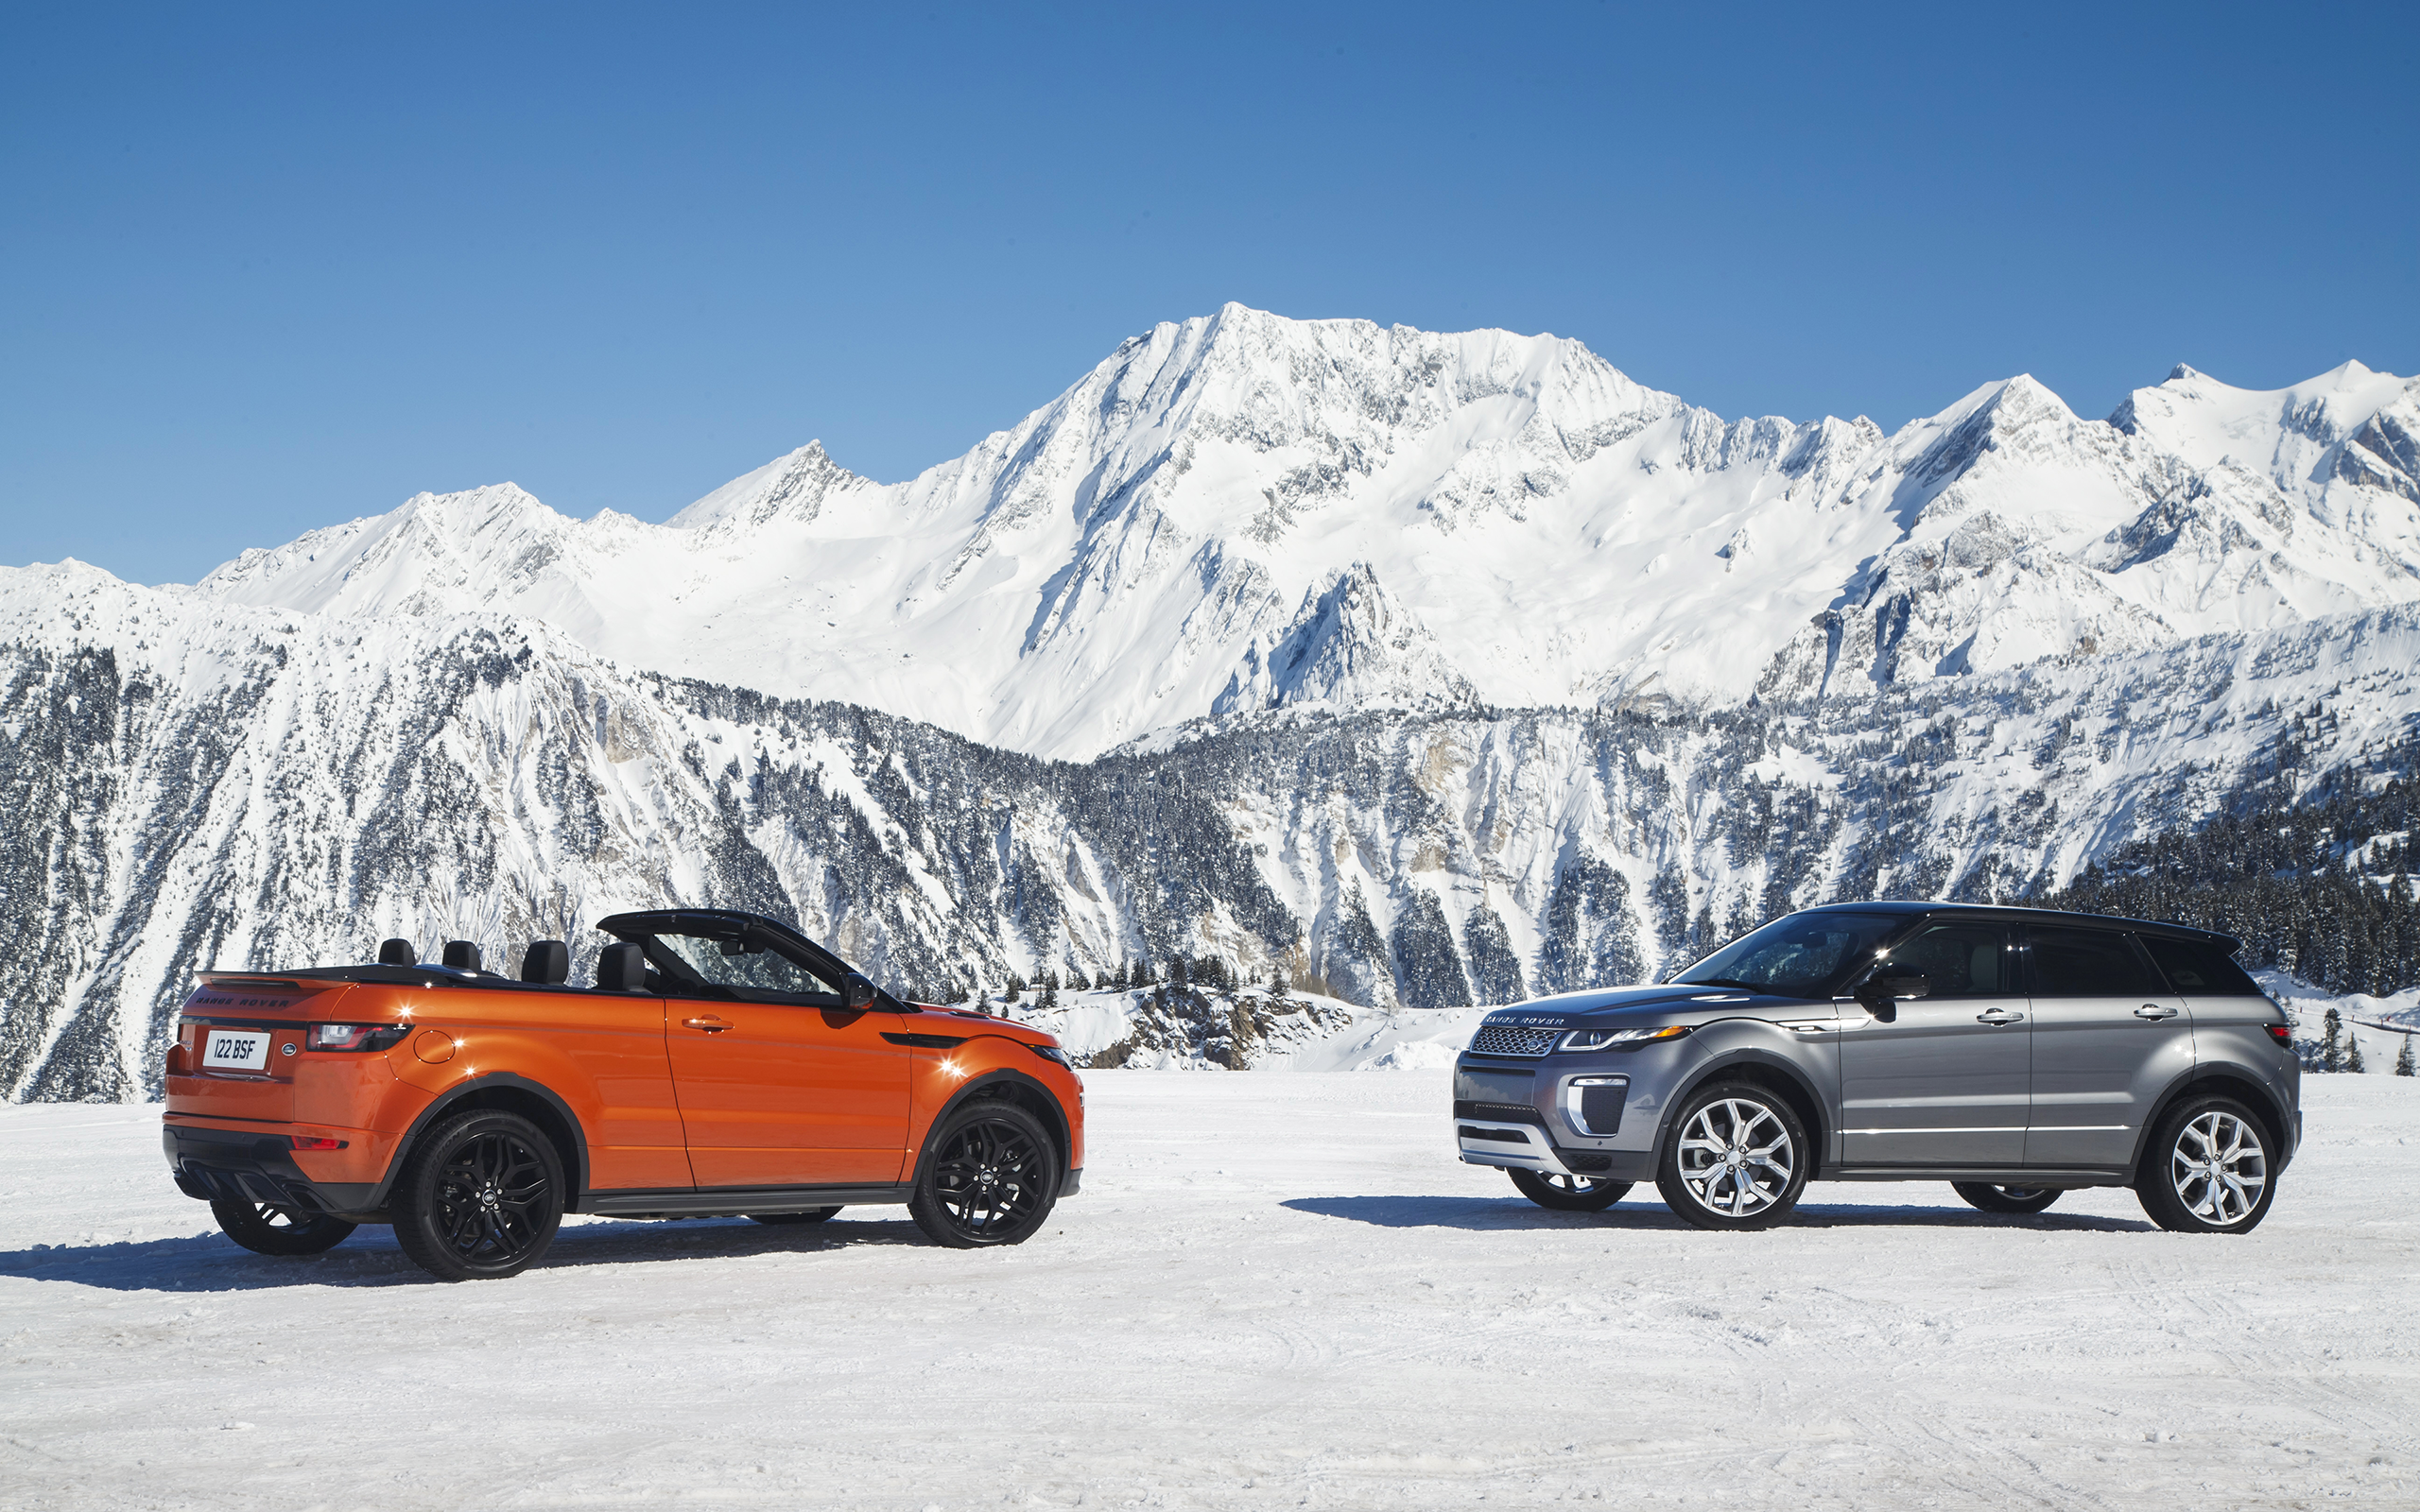 Range Rover Evoque Convertible Car Vehicle Snow Mountains 2560x1600